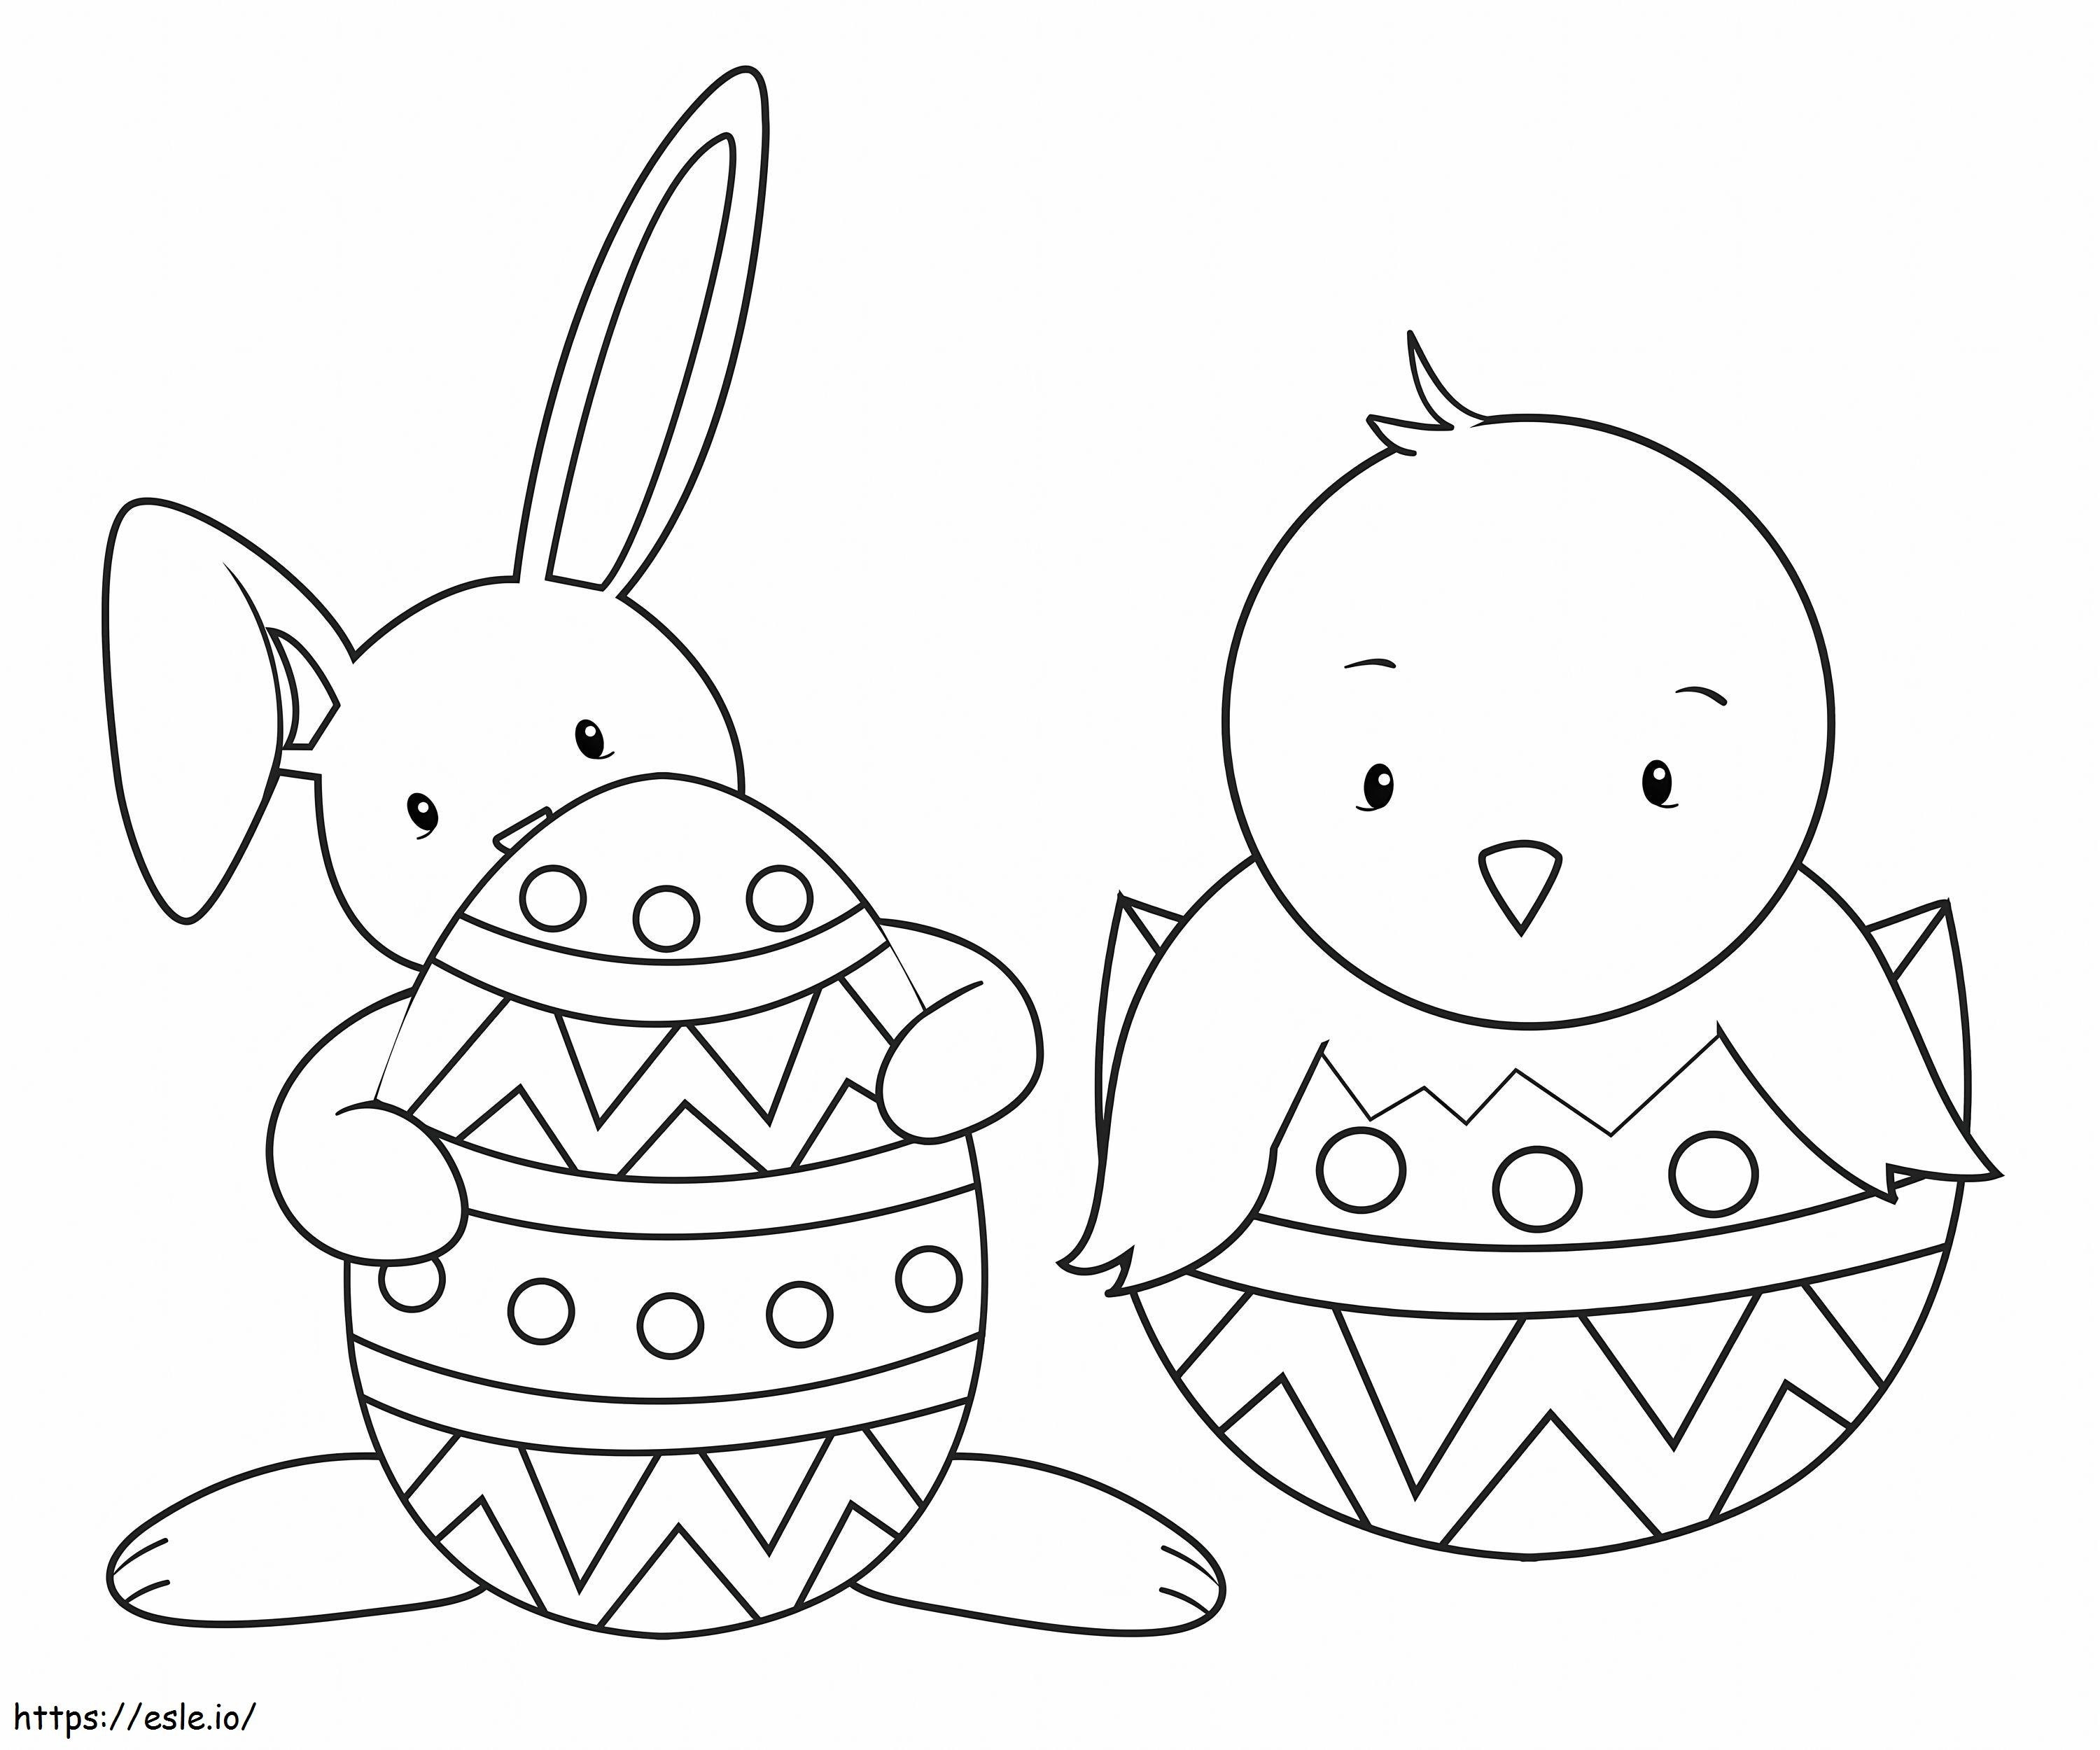 Conejito y pollito con huevo de Pascua para colorear